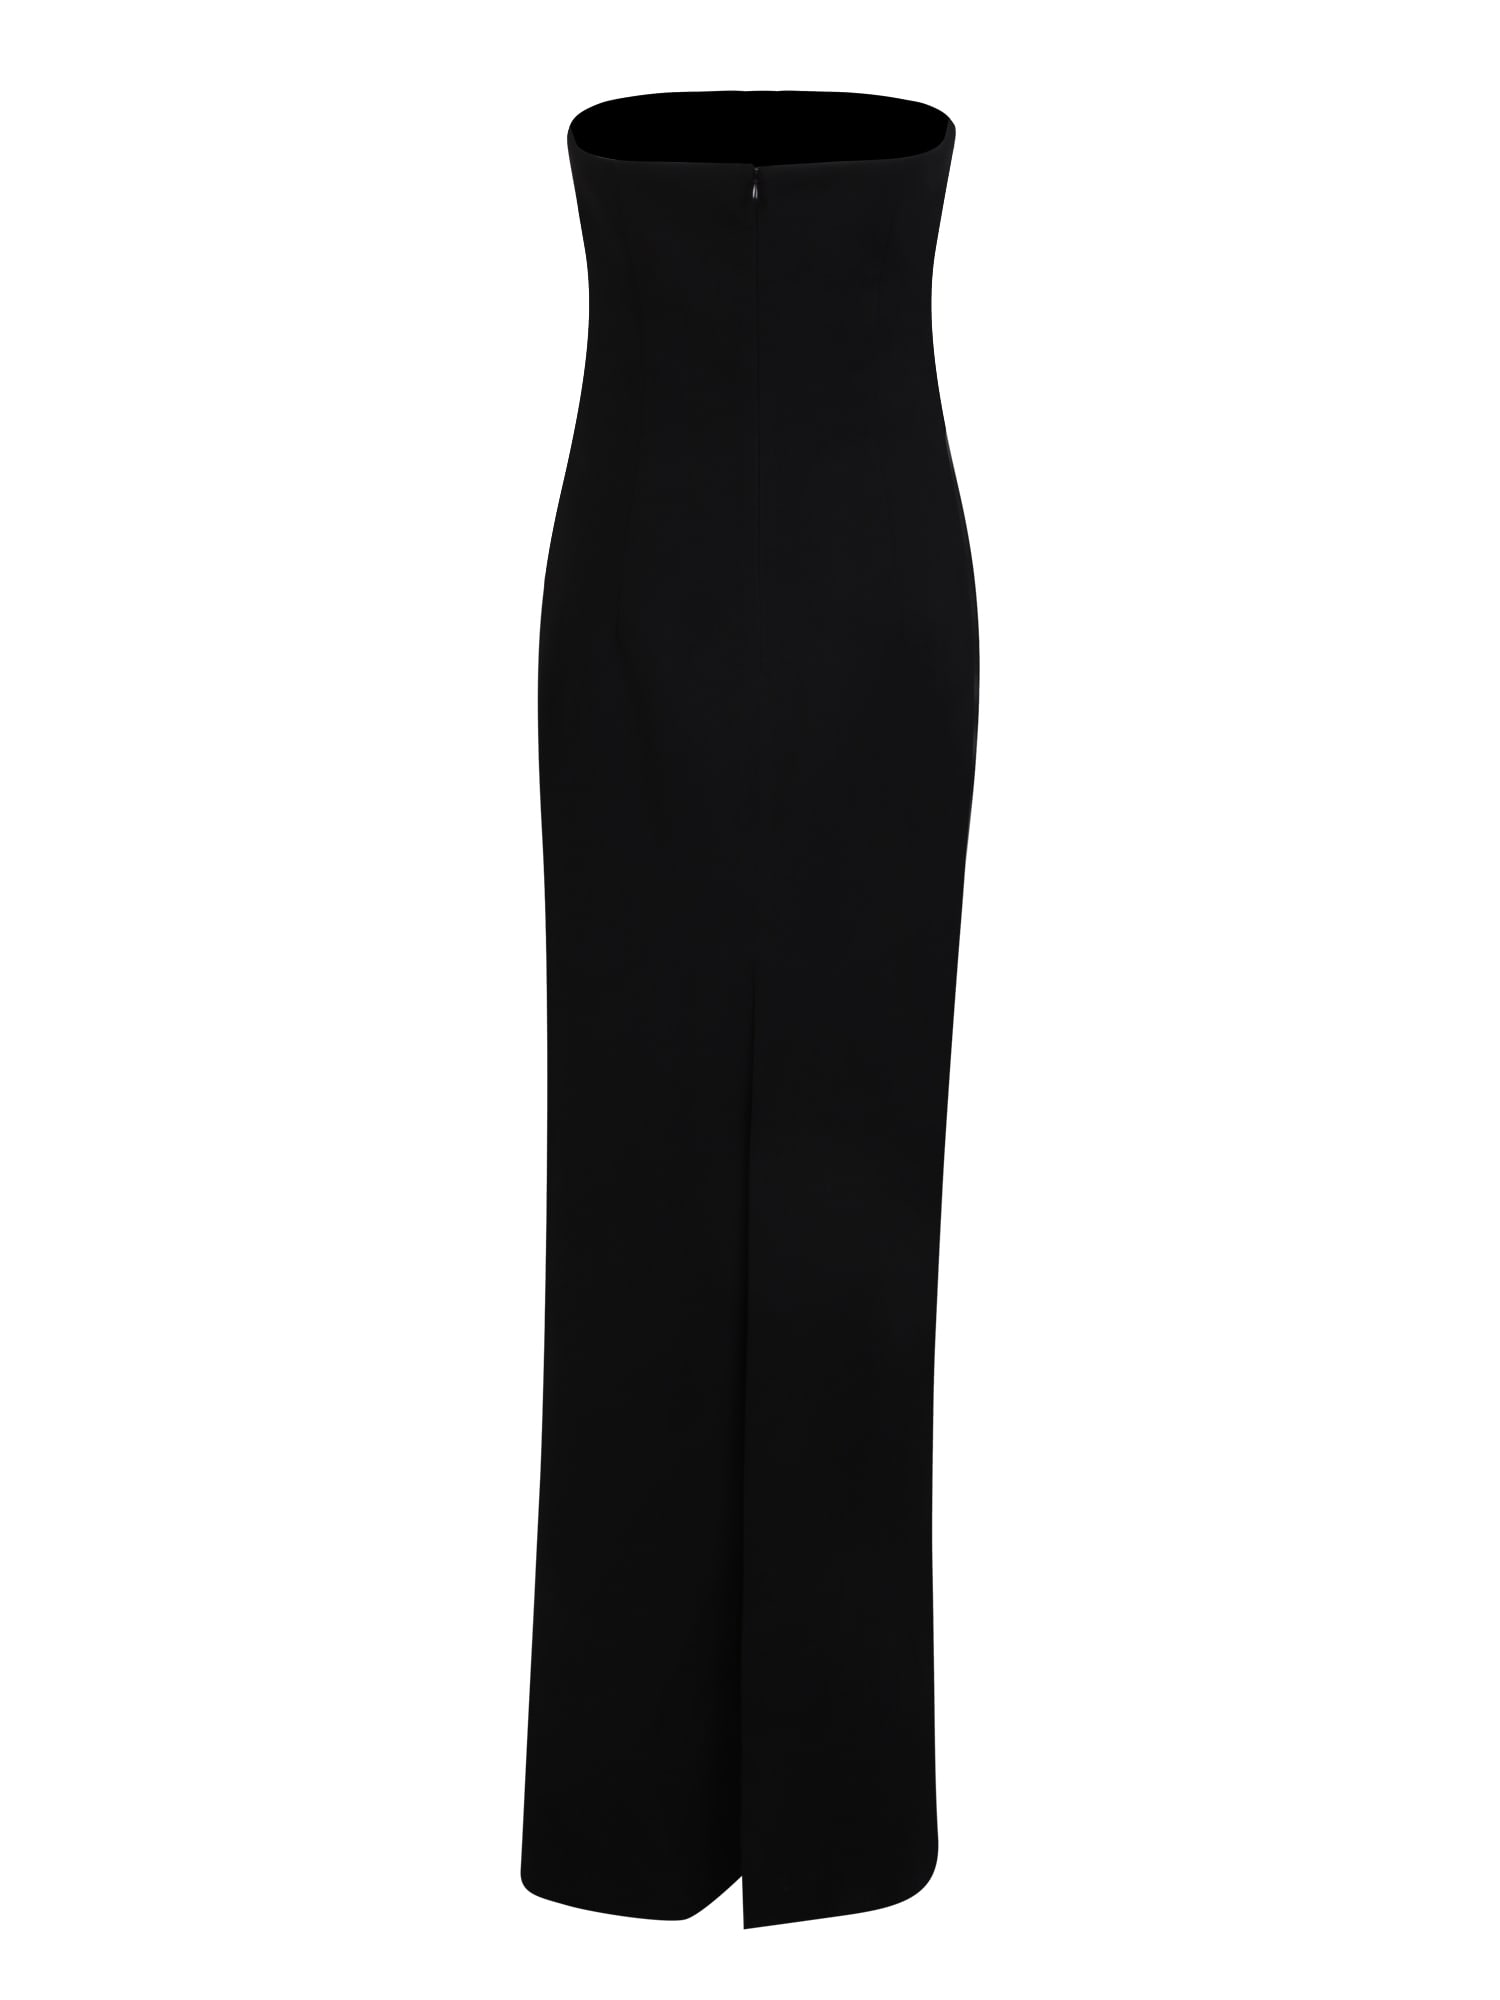 Shop Monot Black Long Dress